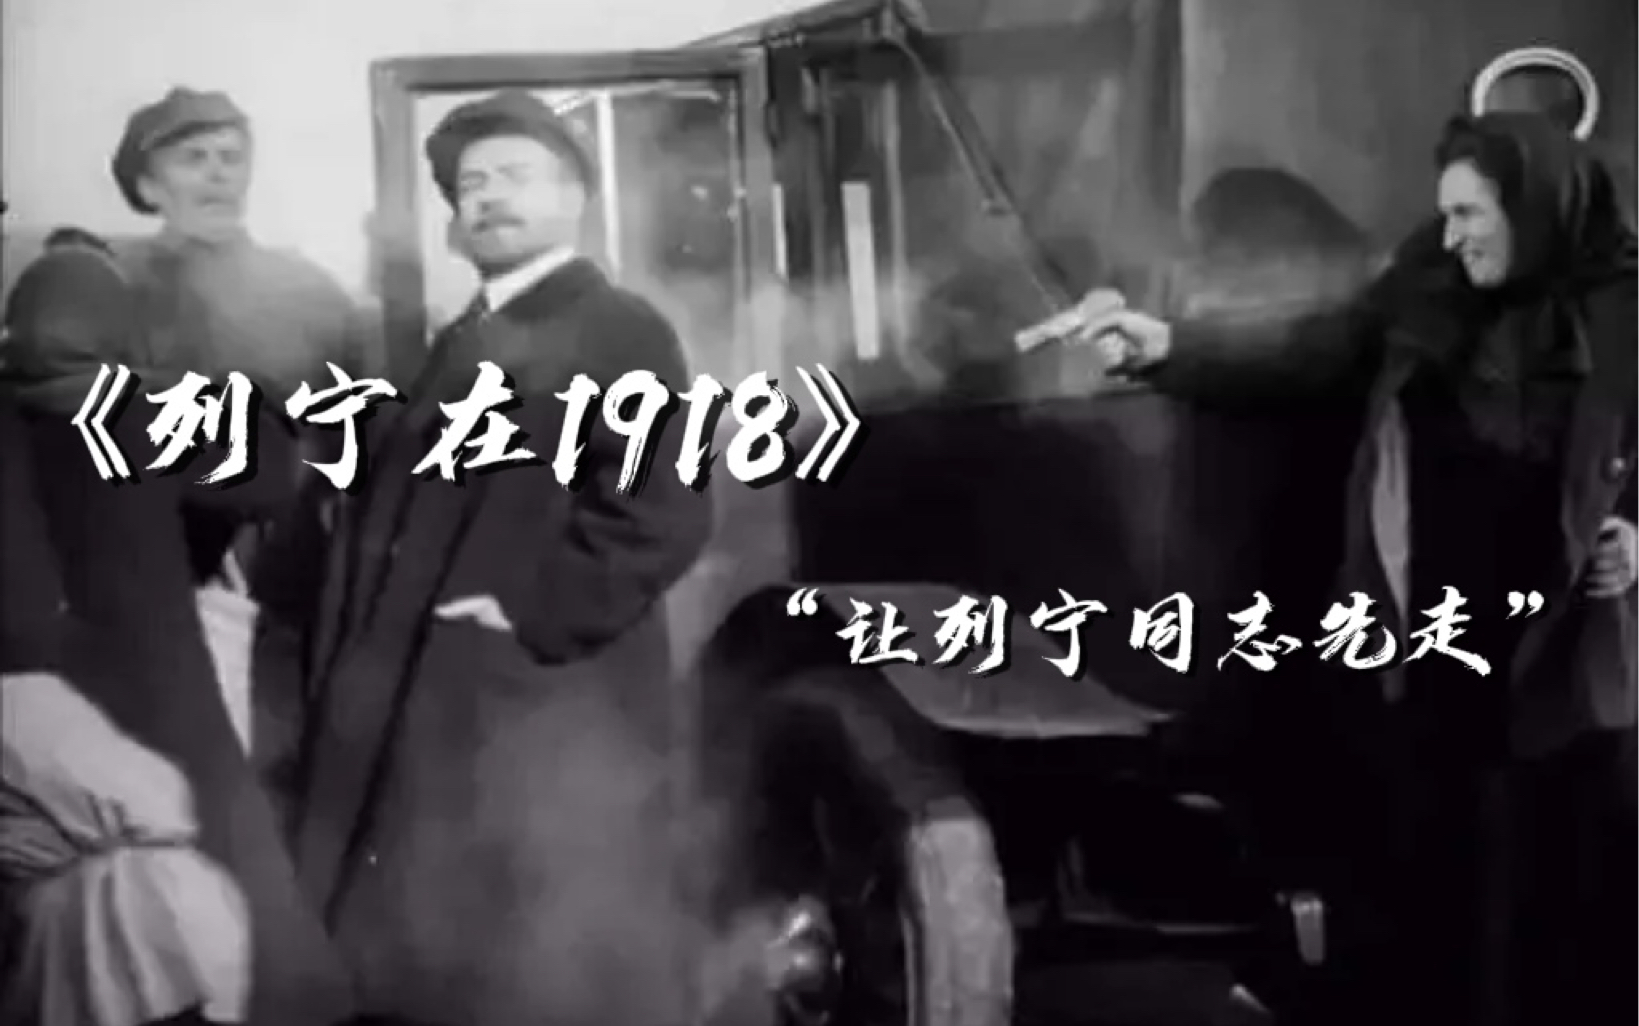 老电影经典台词21——《列宁在1918》